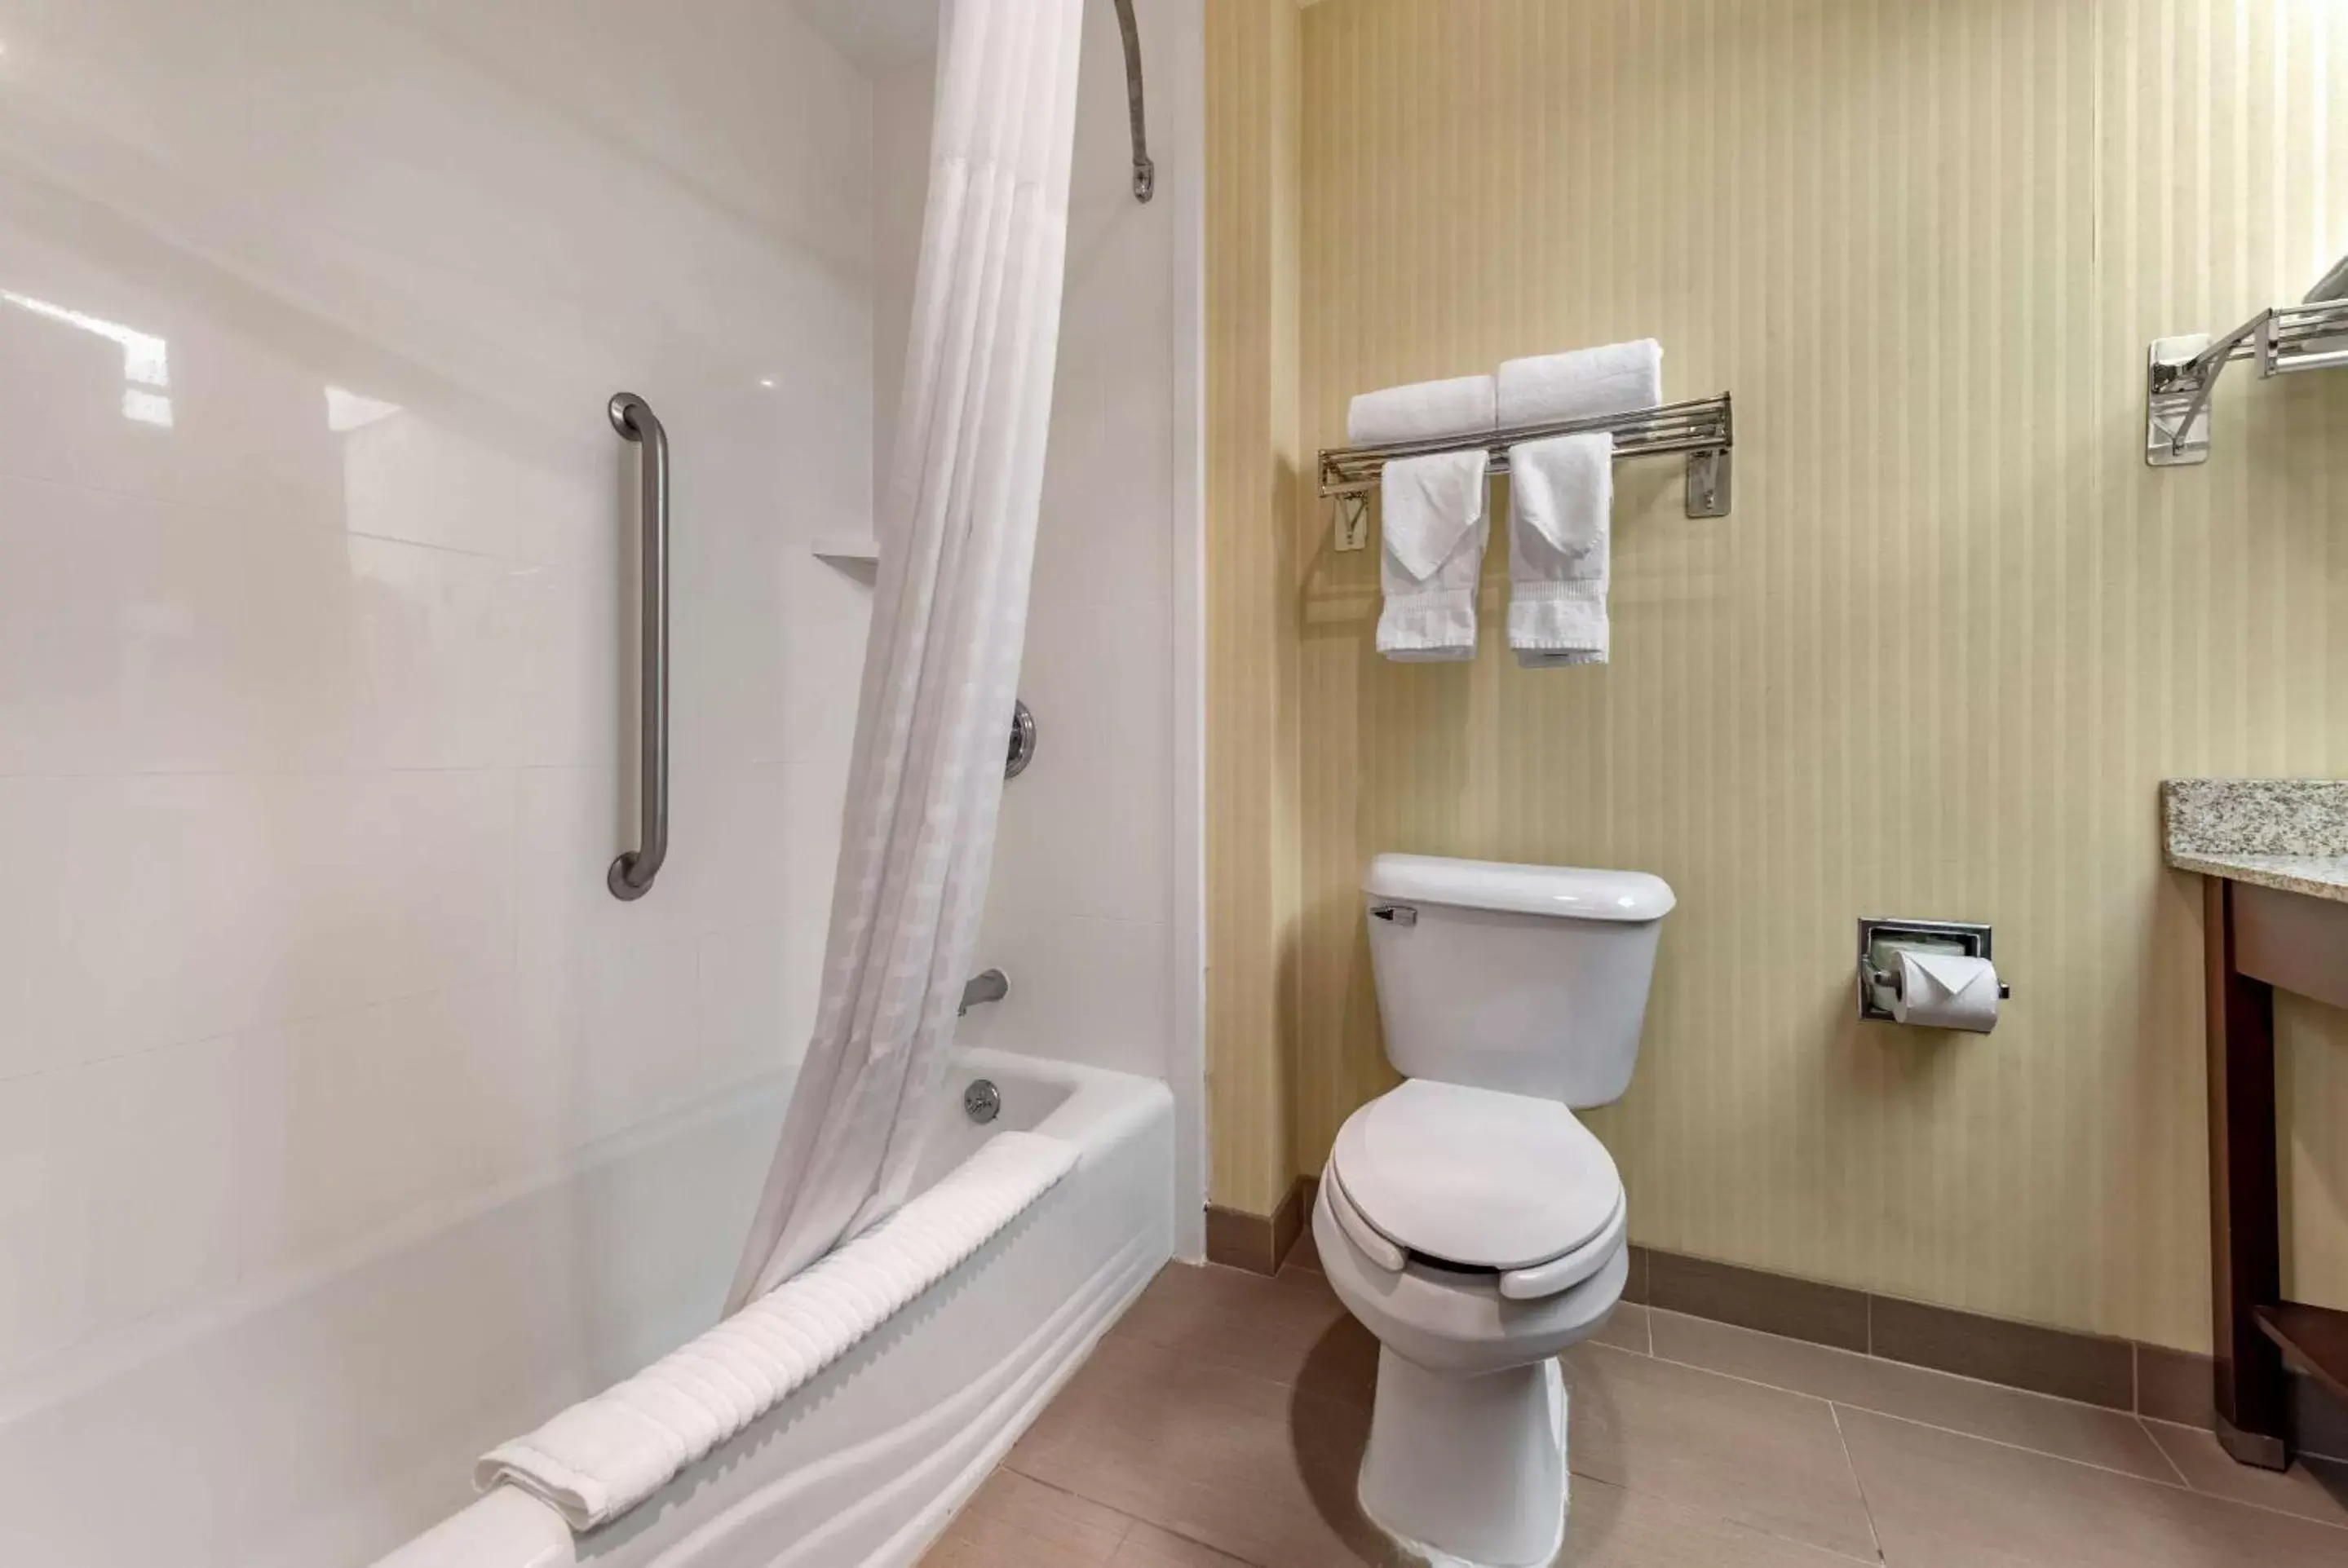 Bathroom in Comfort Inn & Suites Warsaw near US-30